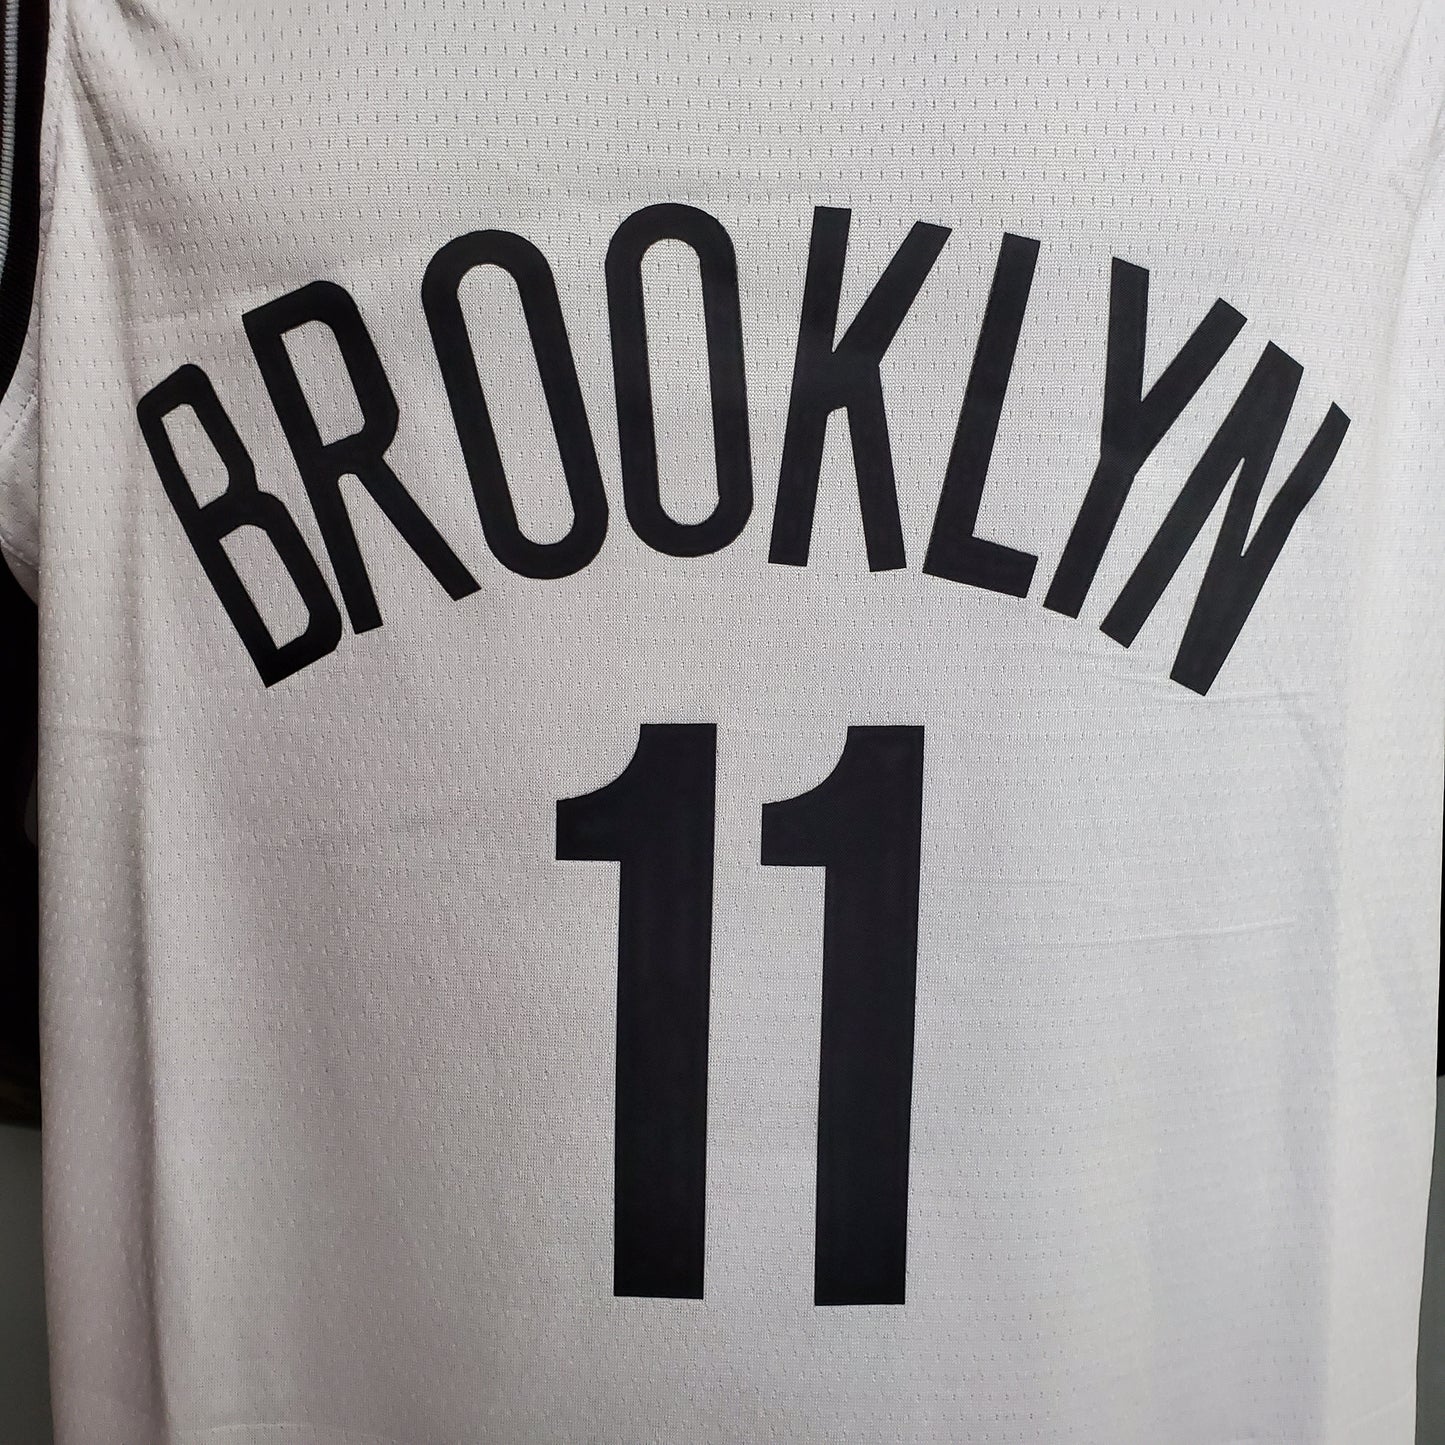 Camisola Brooklyn Nets